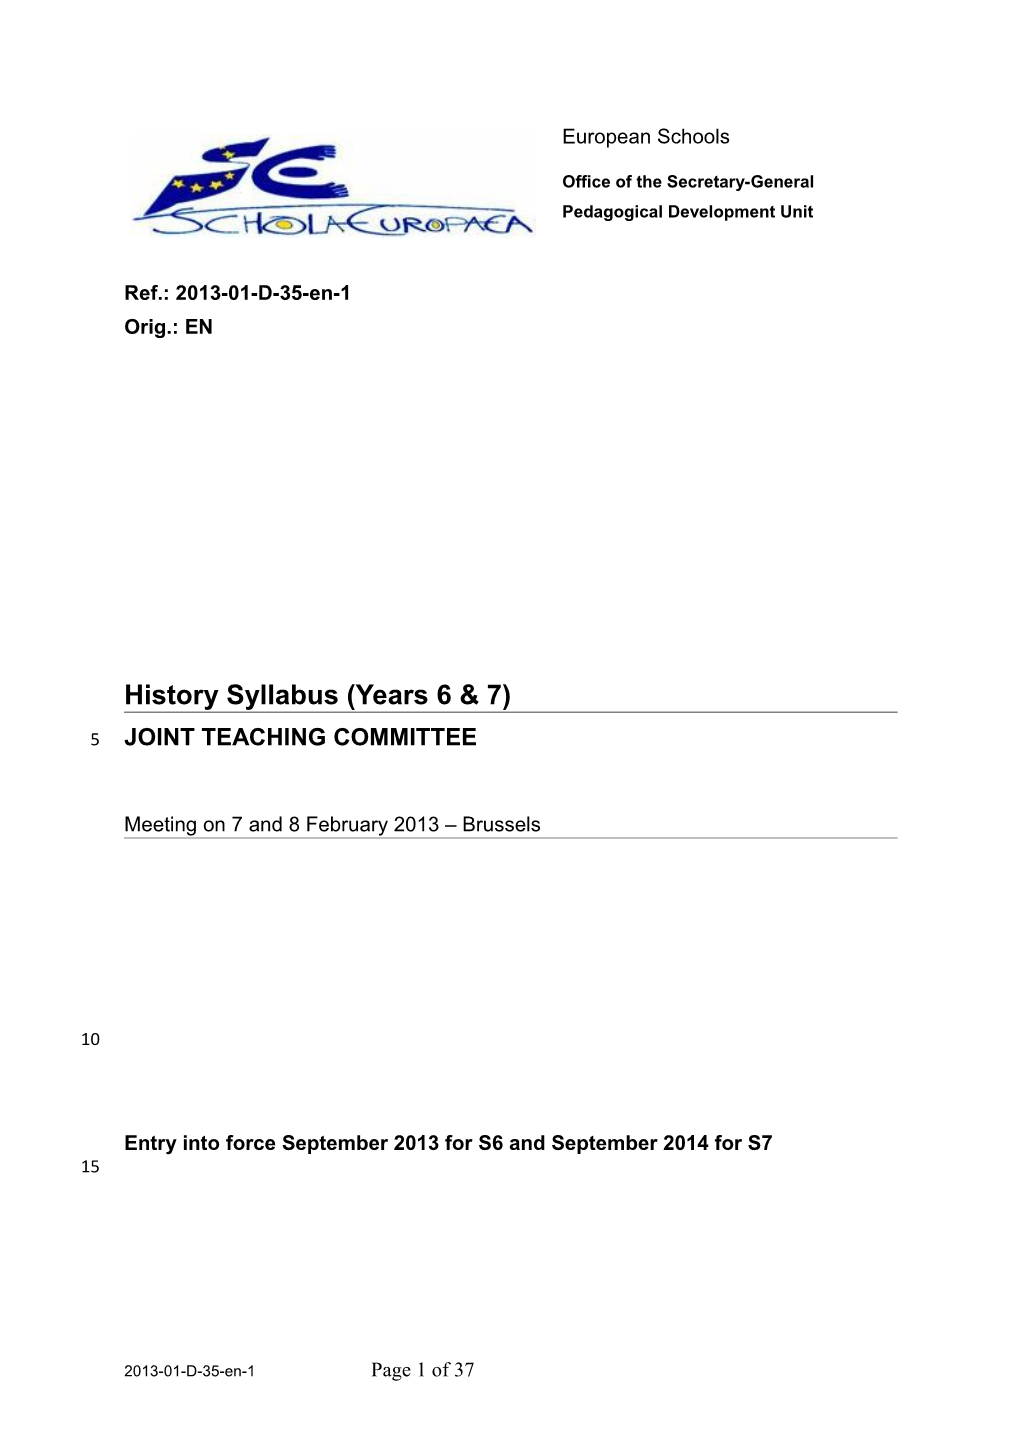 History Syllabus (Years 6 and 7)